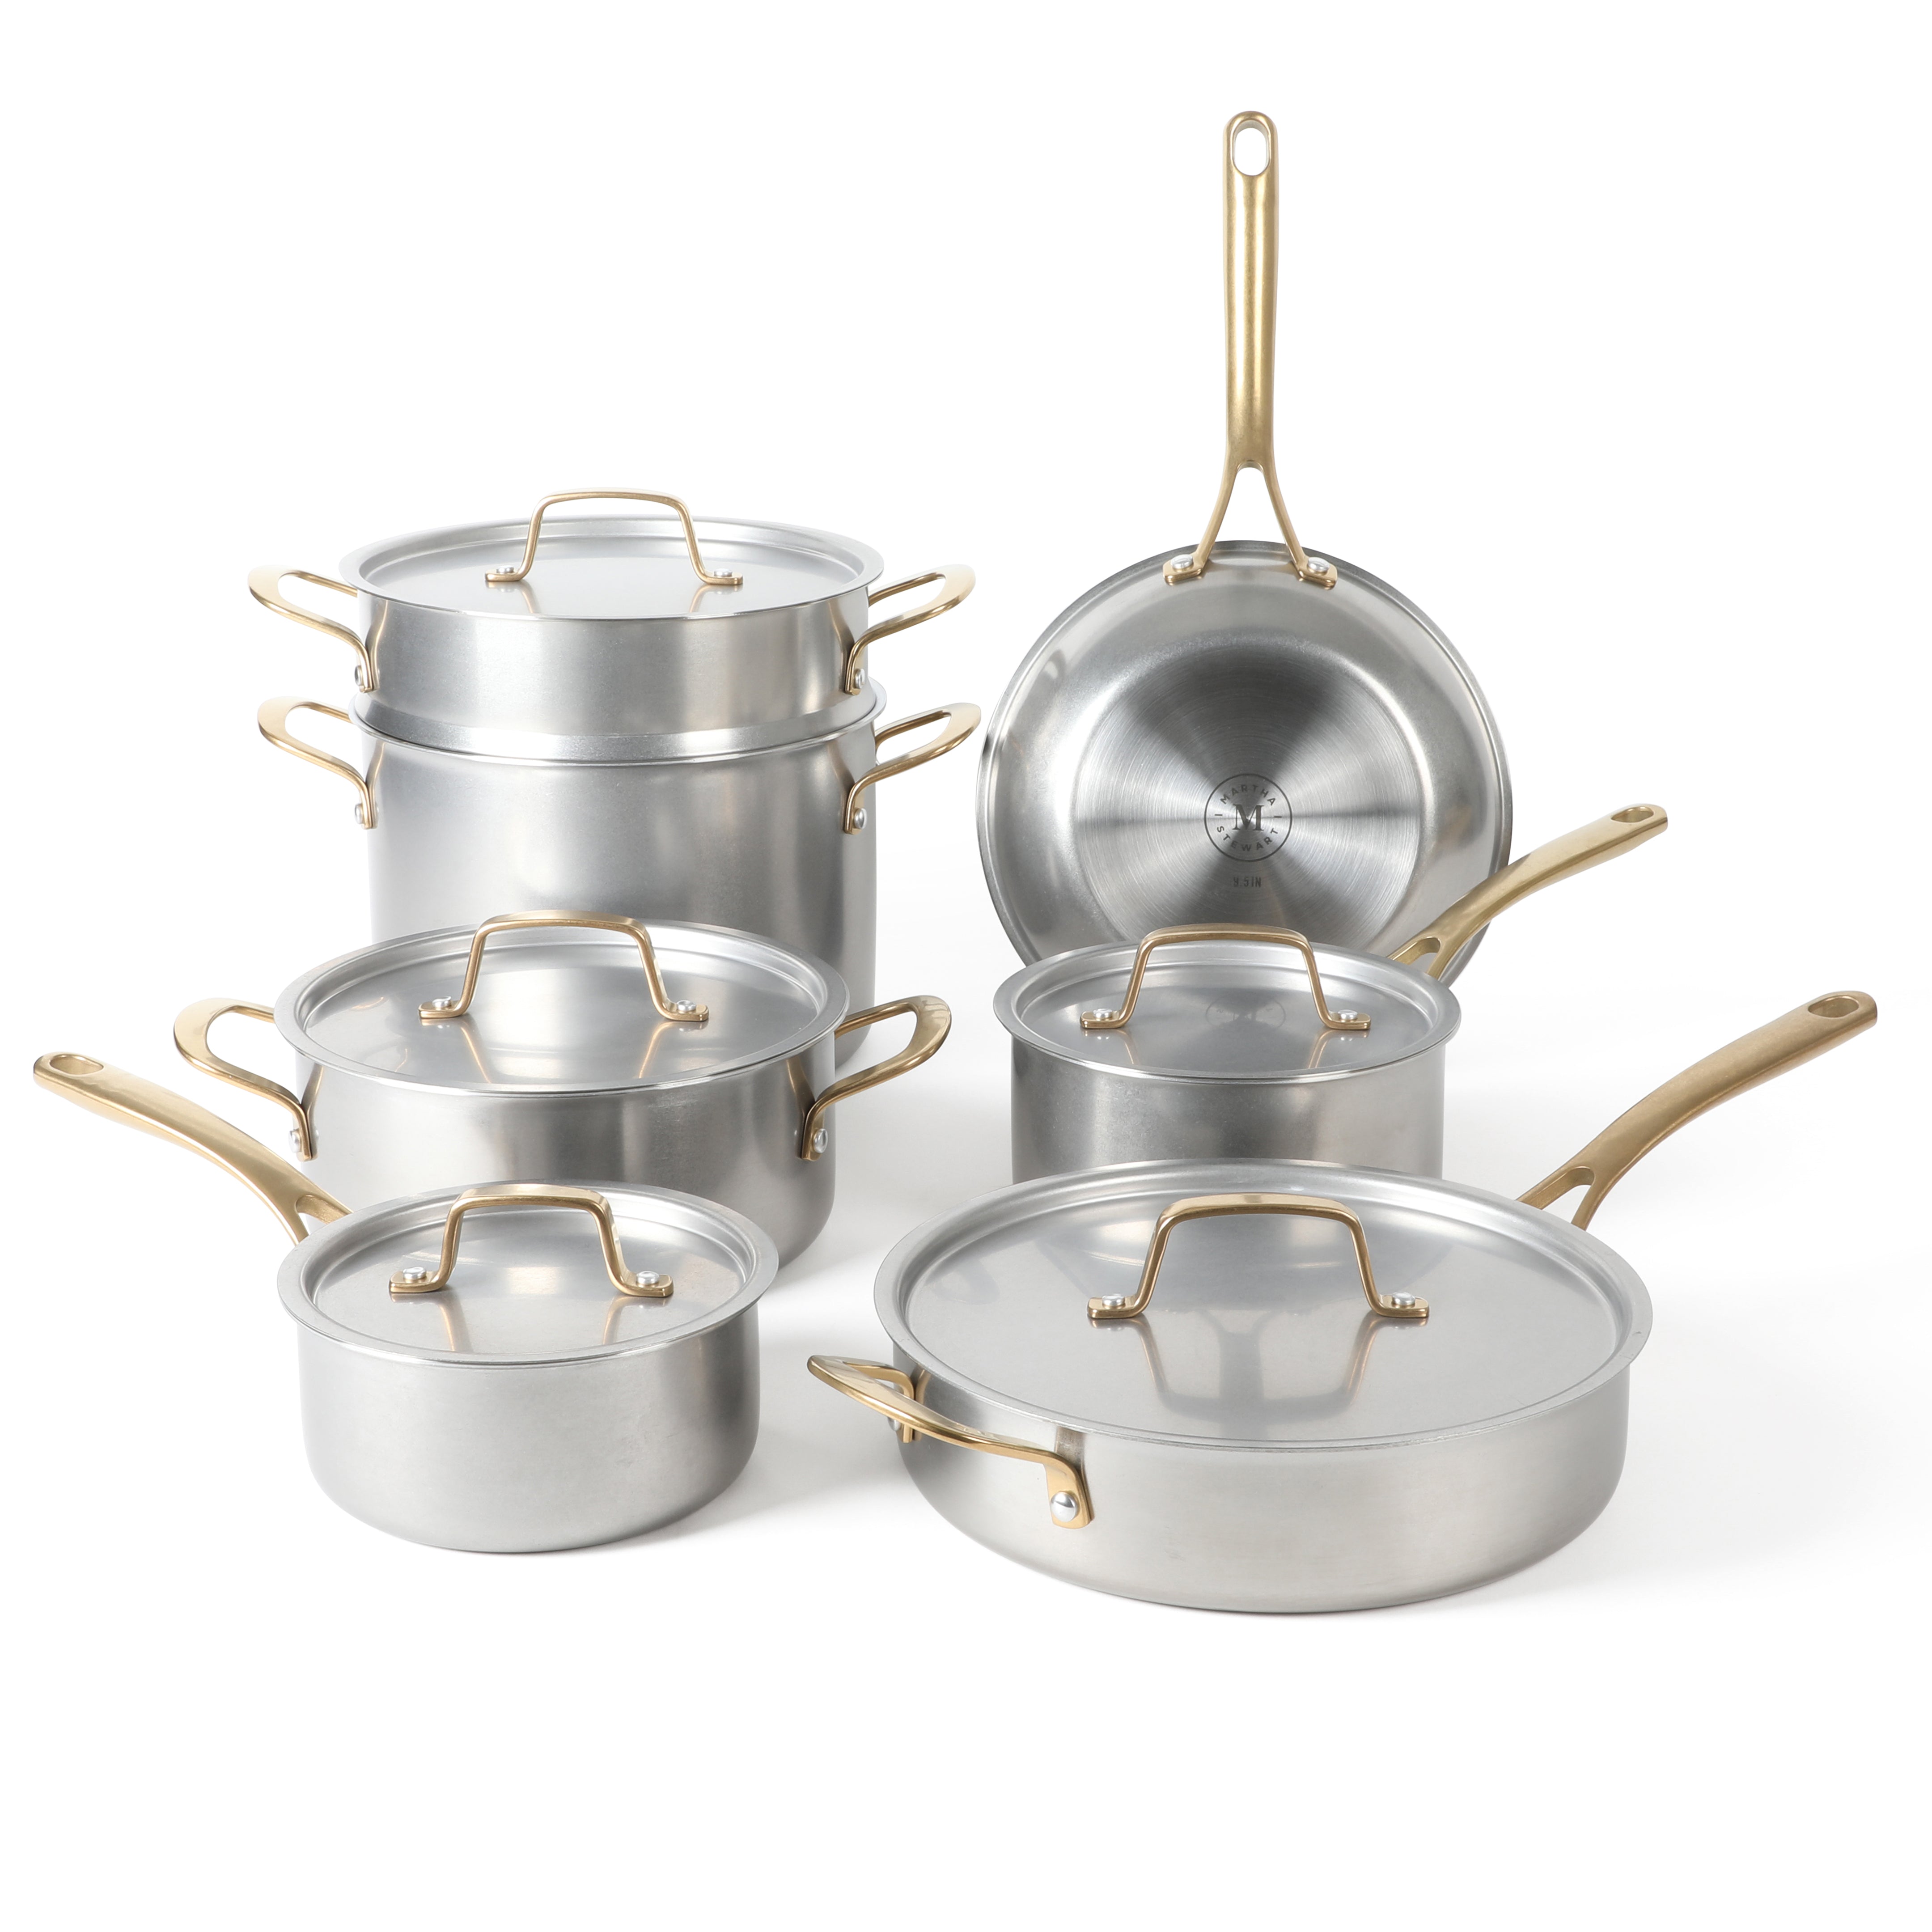 Martha Stewart Vintage 18/8 Tri-ply Stainless Steel 12-Piece Cookware Set  w/ Gold Handles